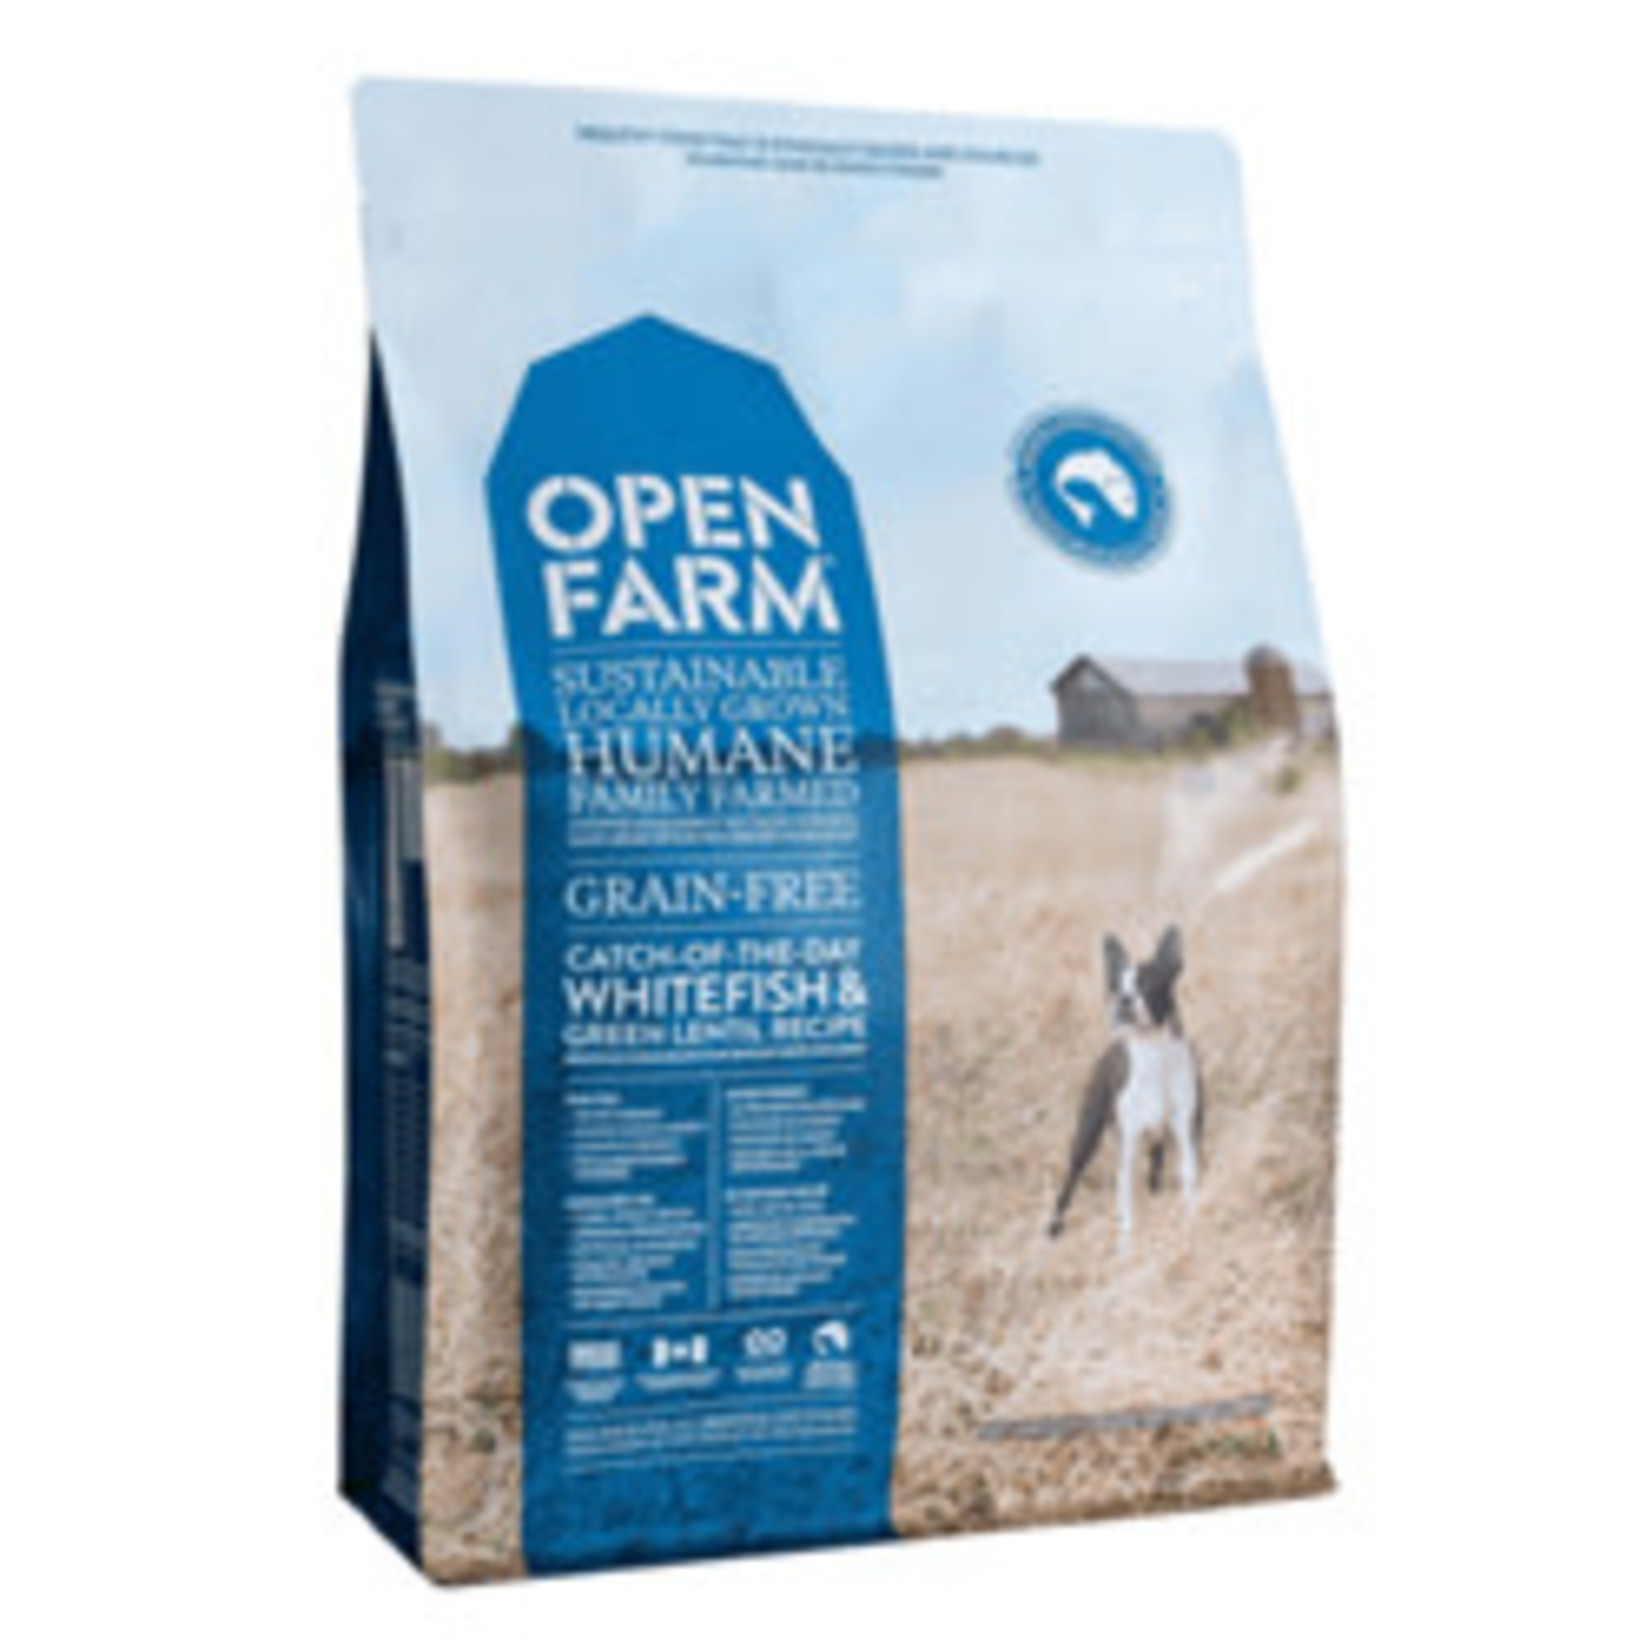 Open Farm Grain Free Catch of the Season Whitefish Dog 22# Open Farm